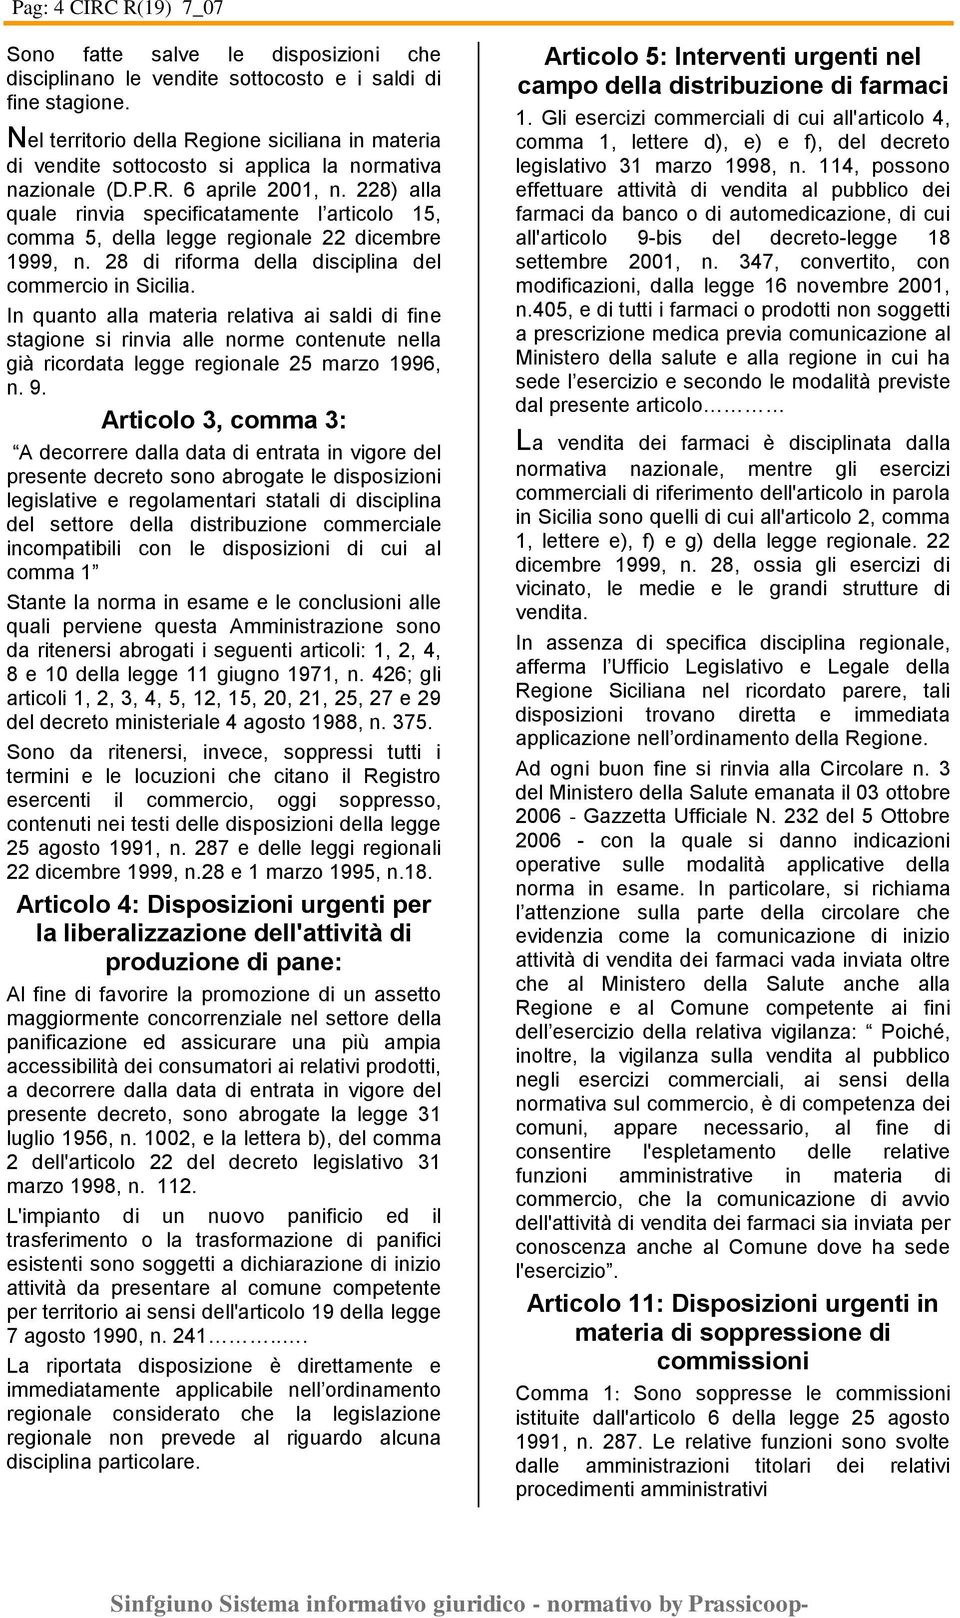 228) alla quale rinvia specificatamente l articolo 15, comma 5, della legge regionale 22 dicembre 1999, n. 28 di riforma della disciplina del commercio in Sicilia.